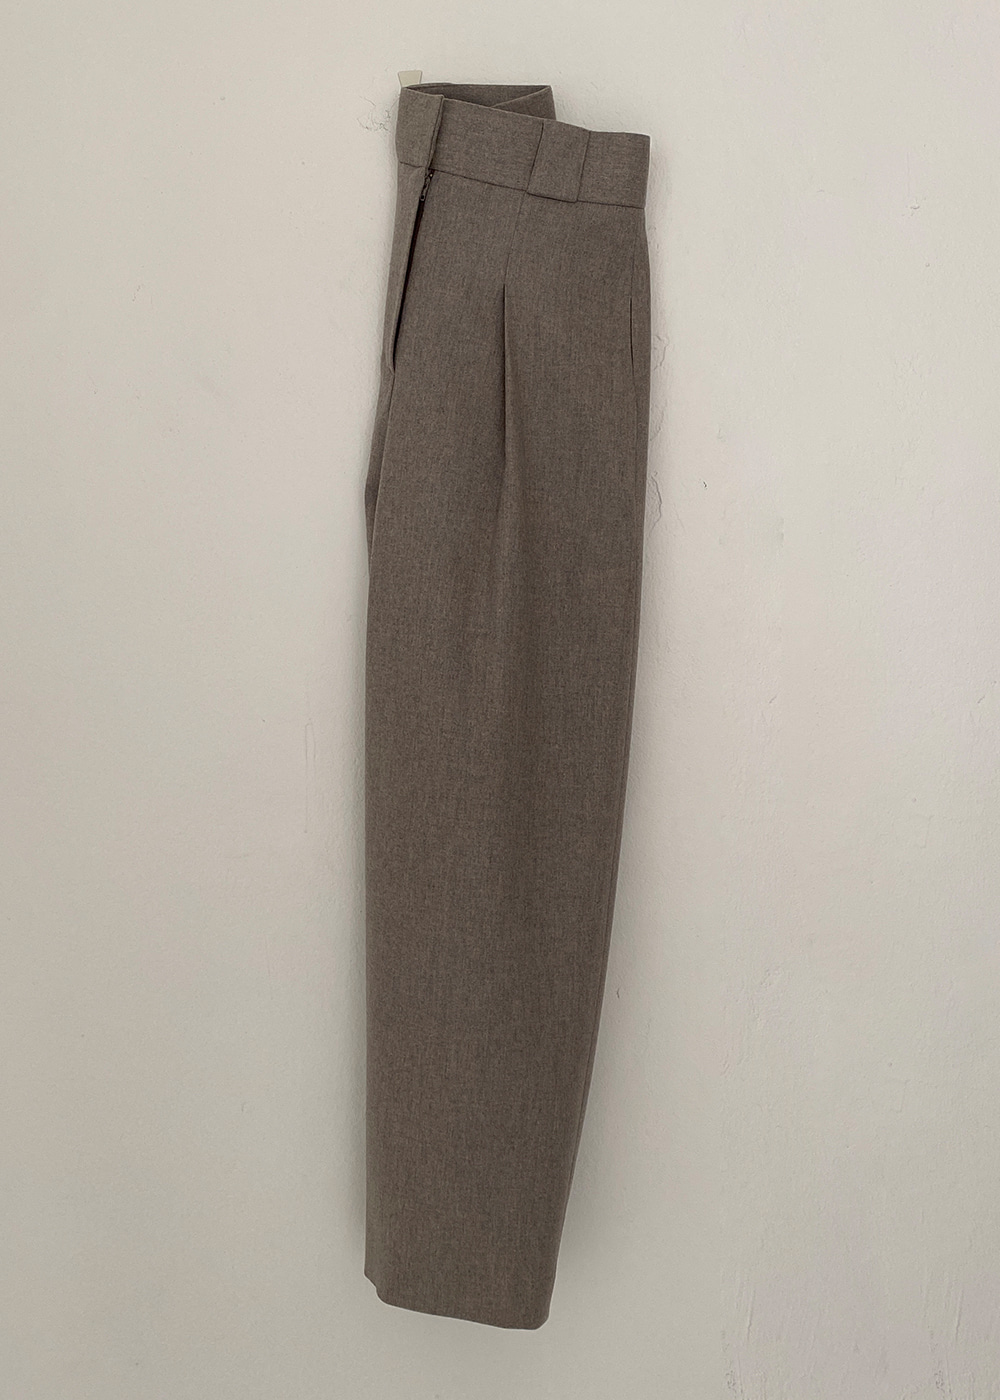 Merino Wool Pants (Brown, Gray)